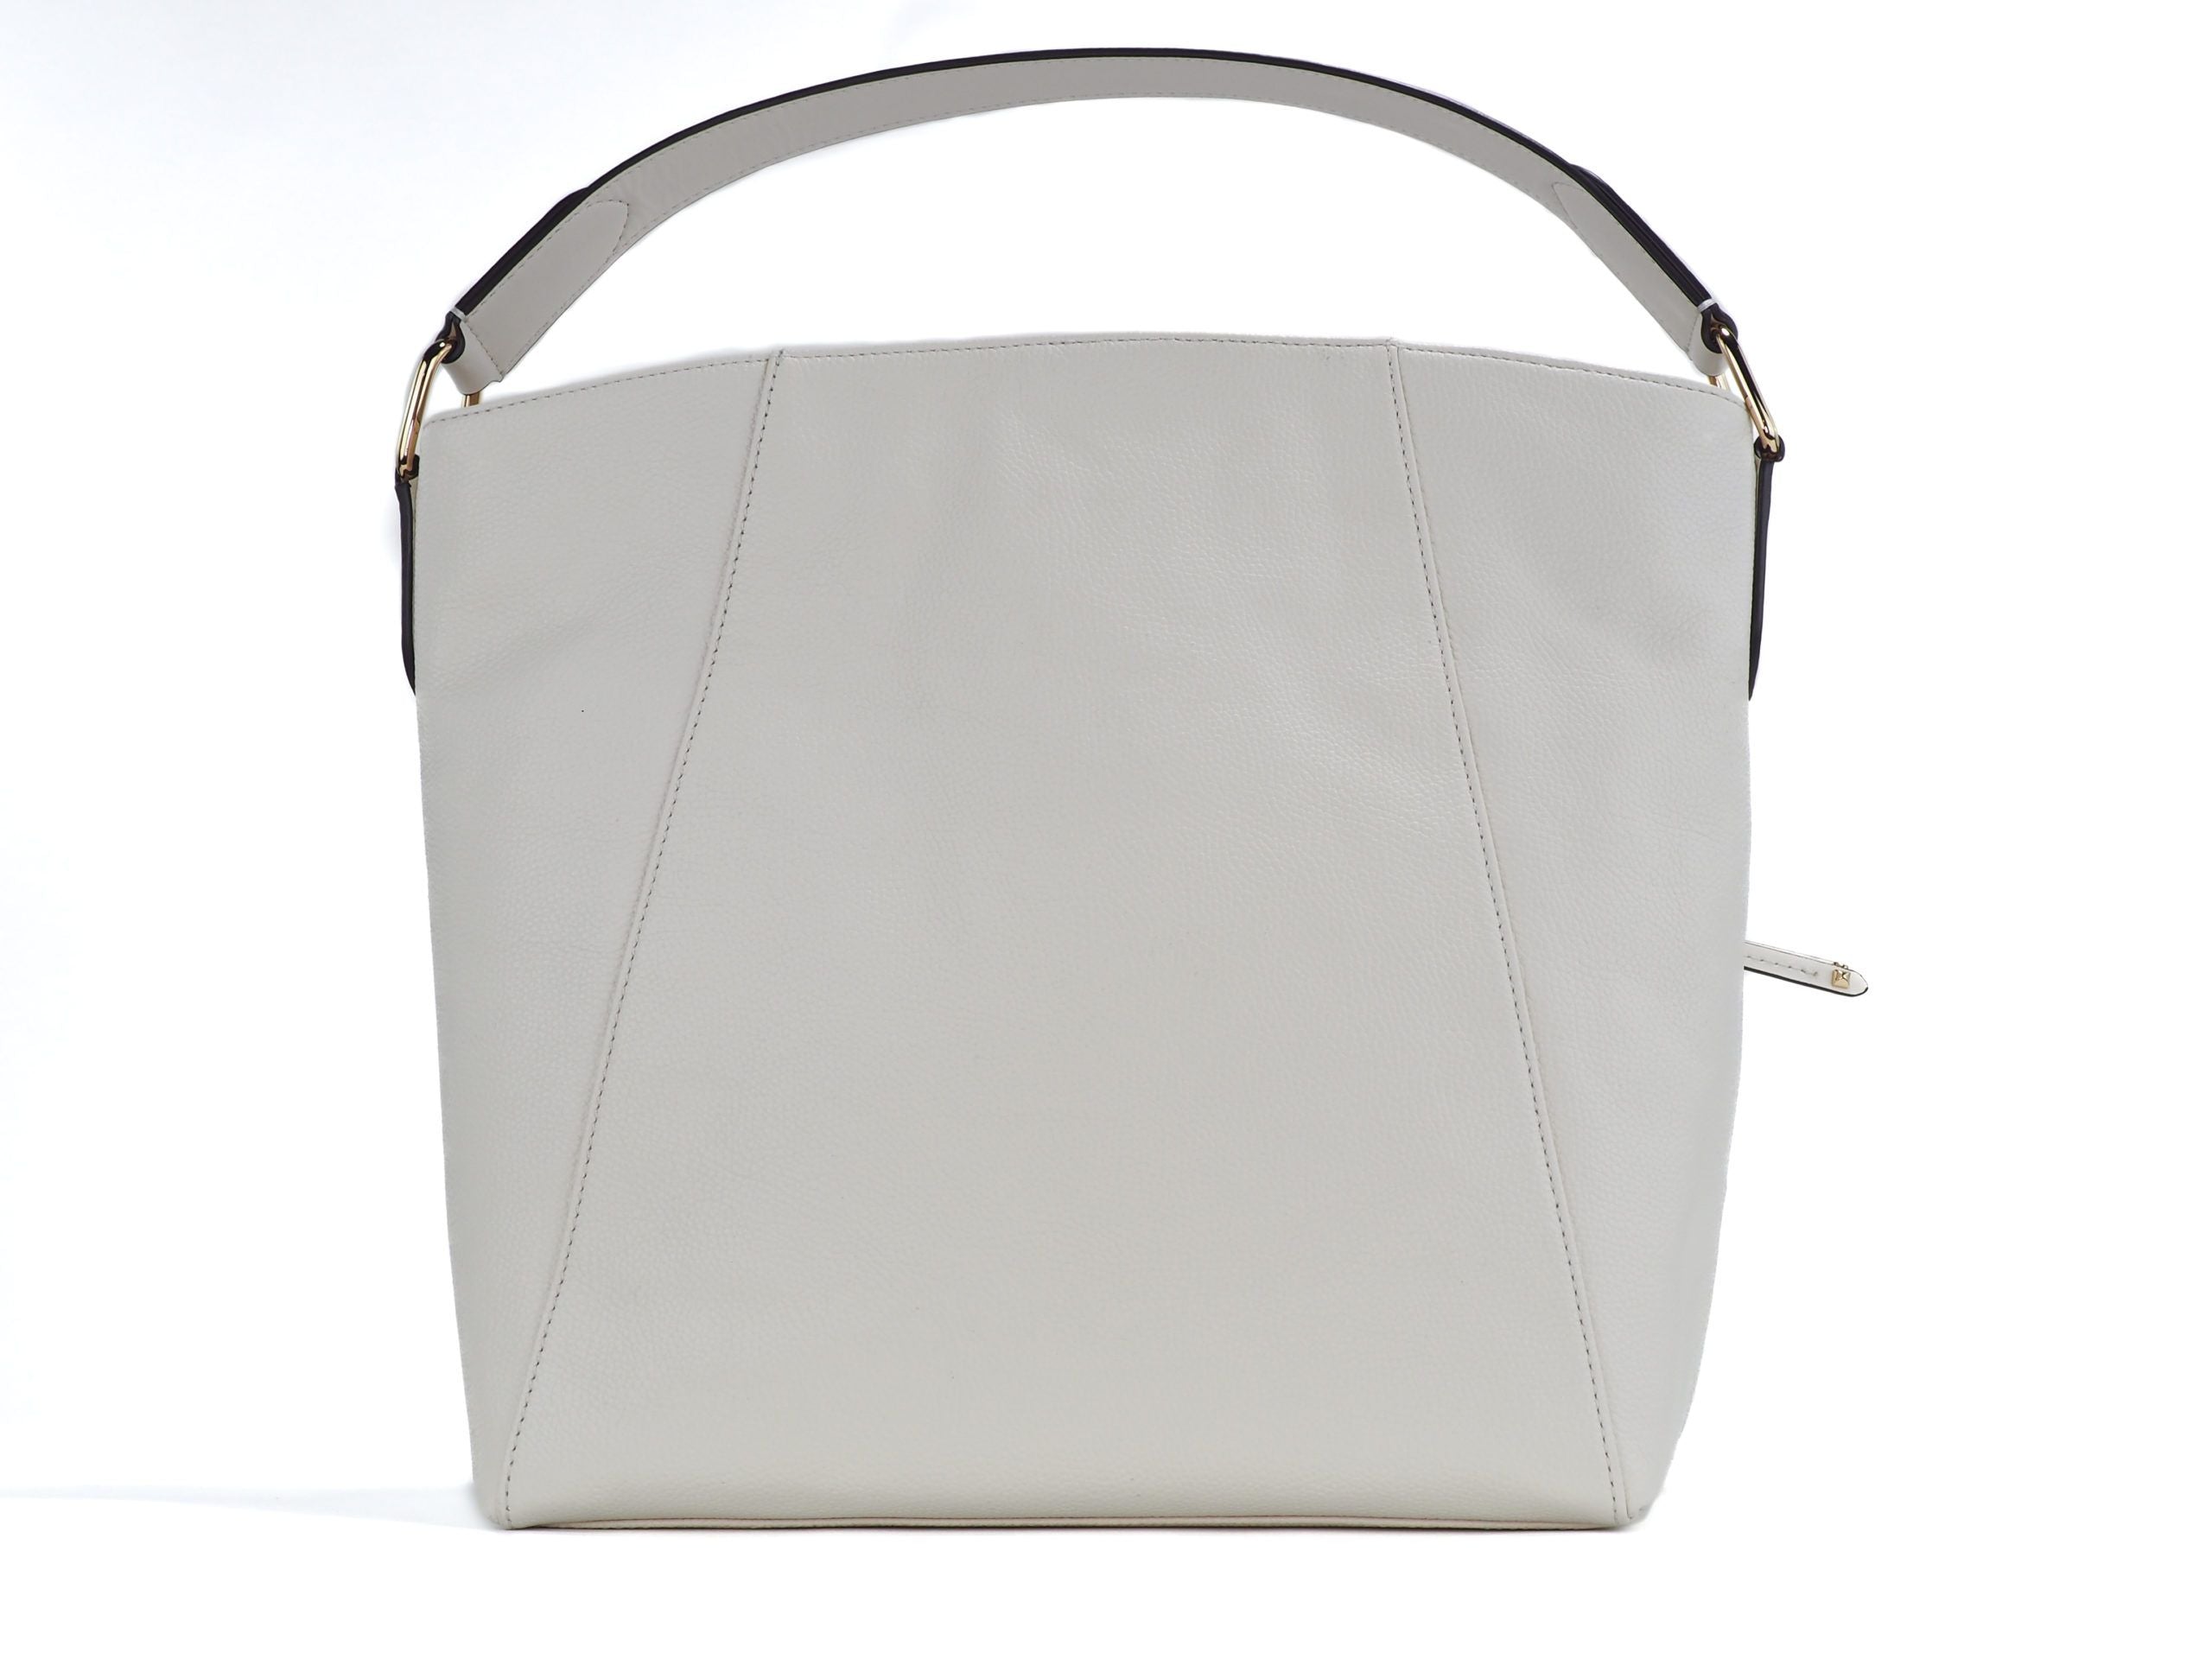 Michael Kors Evie Large Pebbled Leather Hobo Shoulder Bag Handbag (Light Cream)